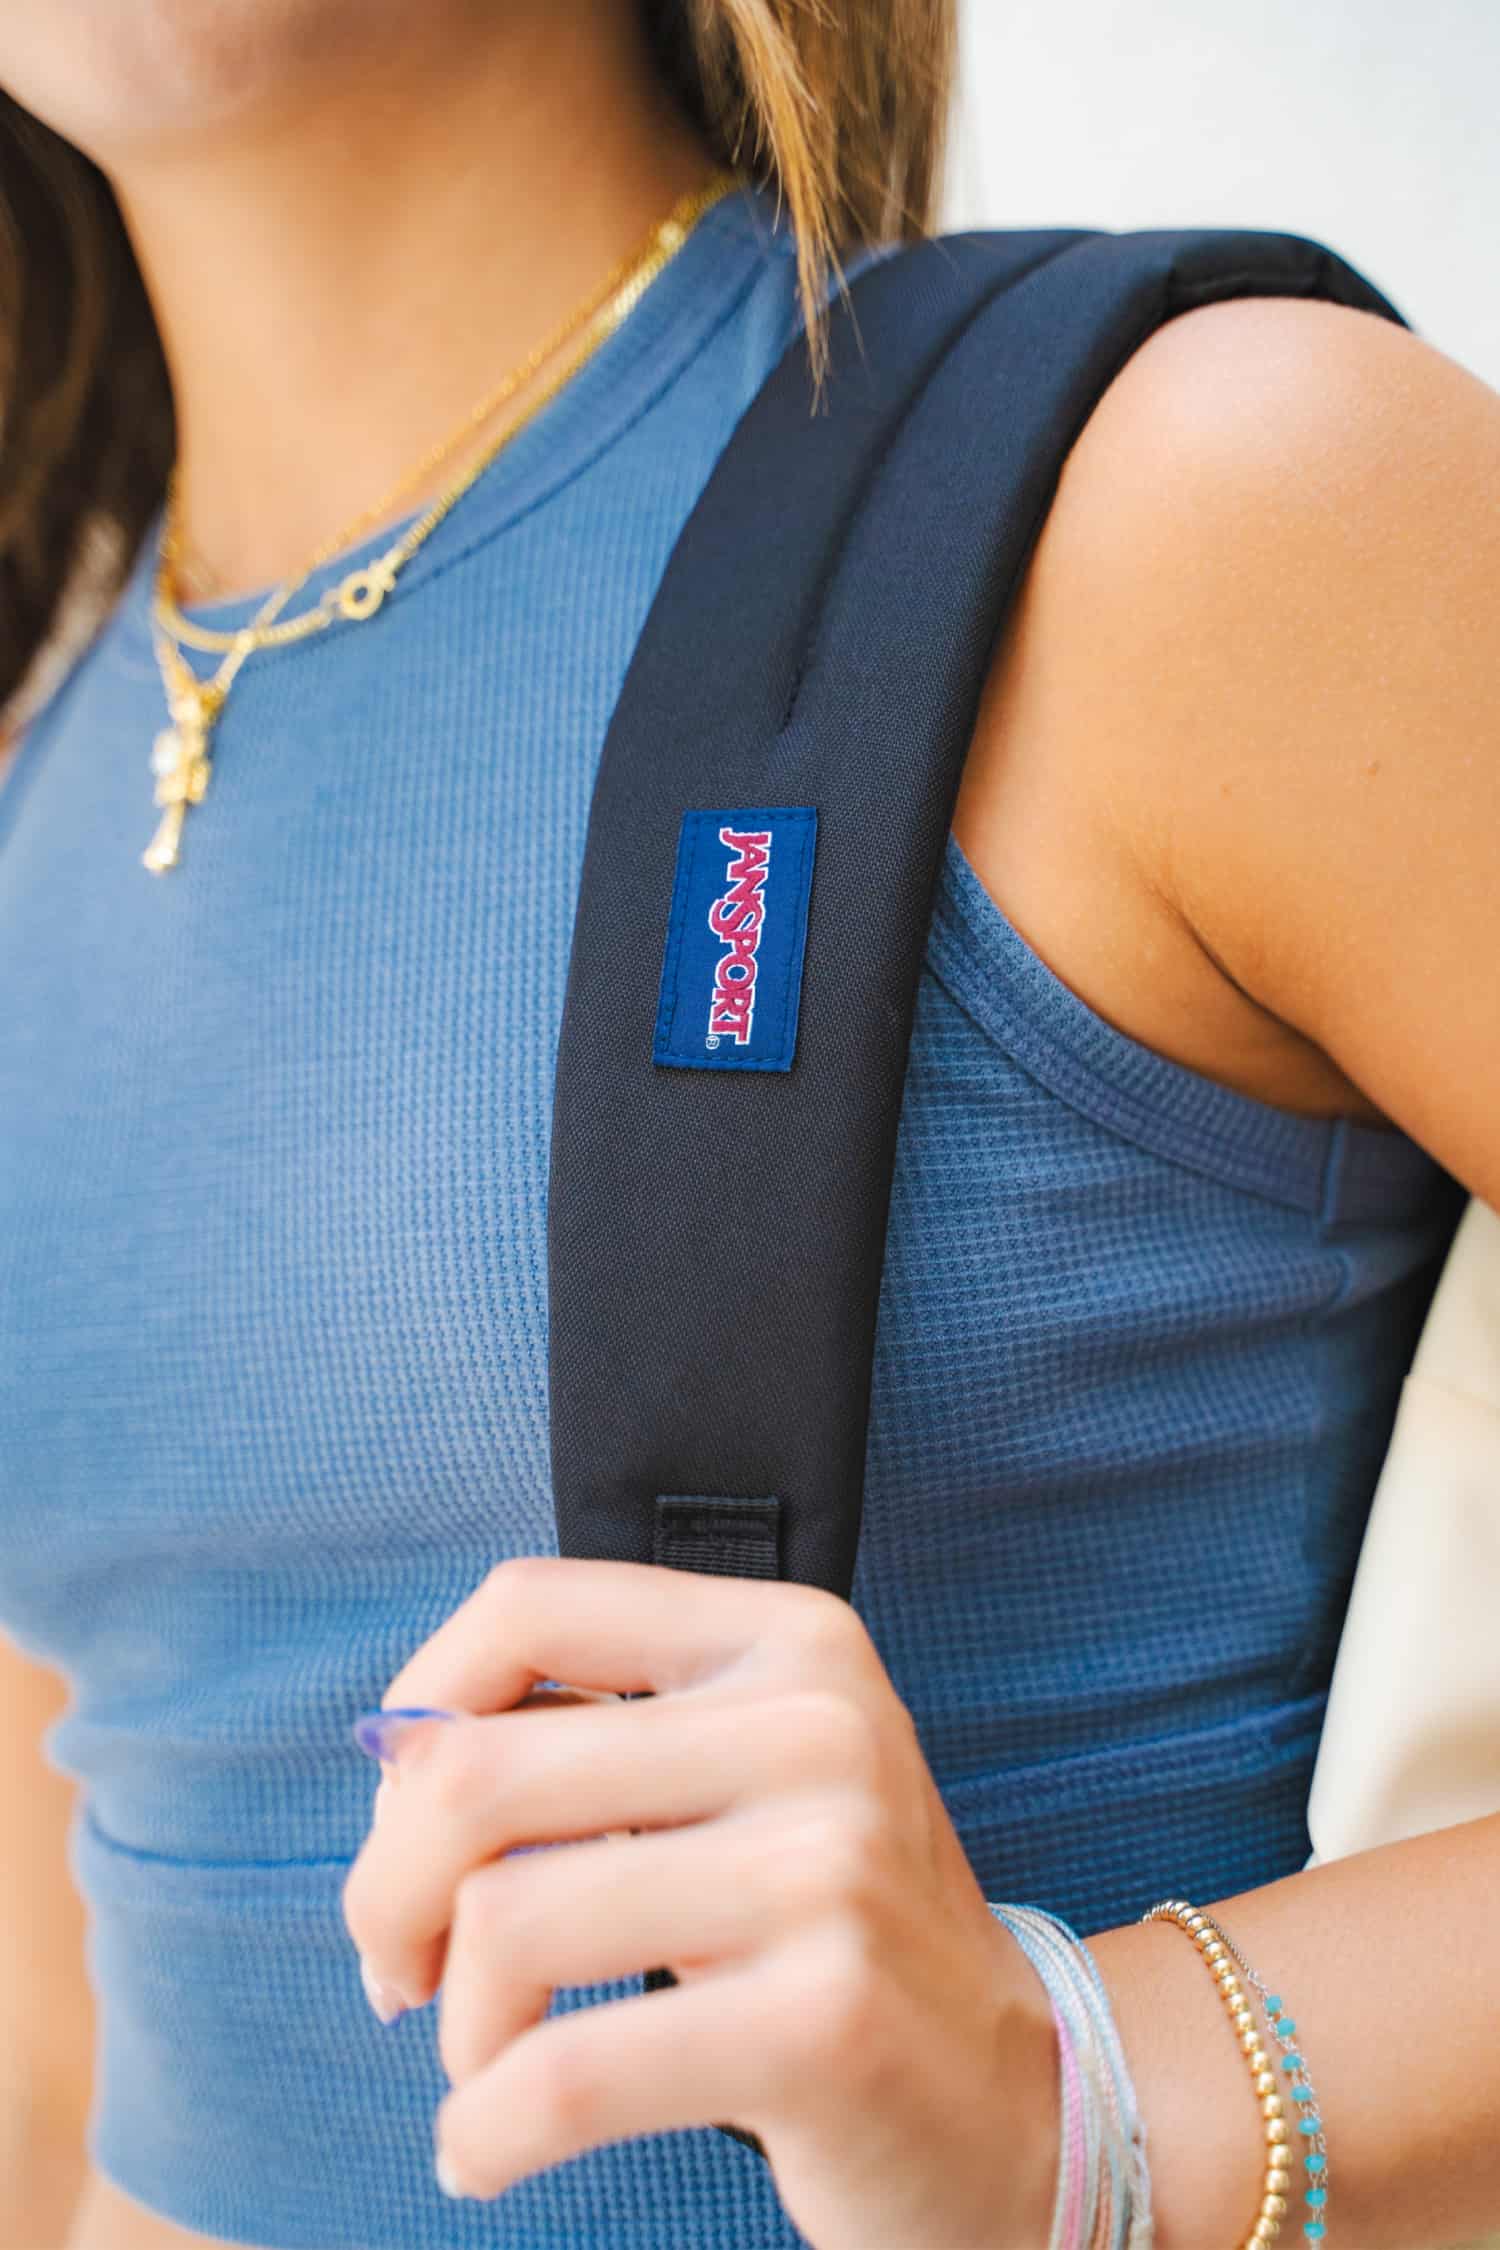 Up close view of JanSport backpack strap over a girl's shoulder.